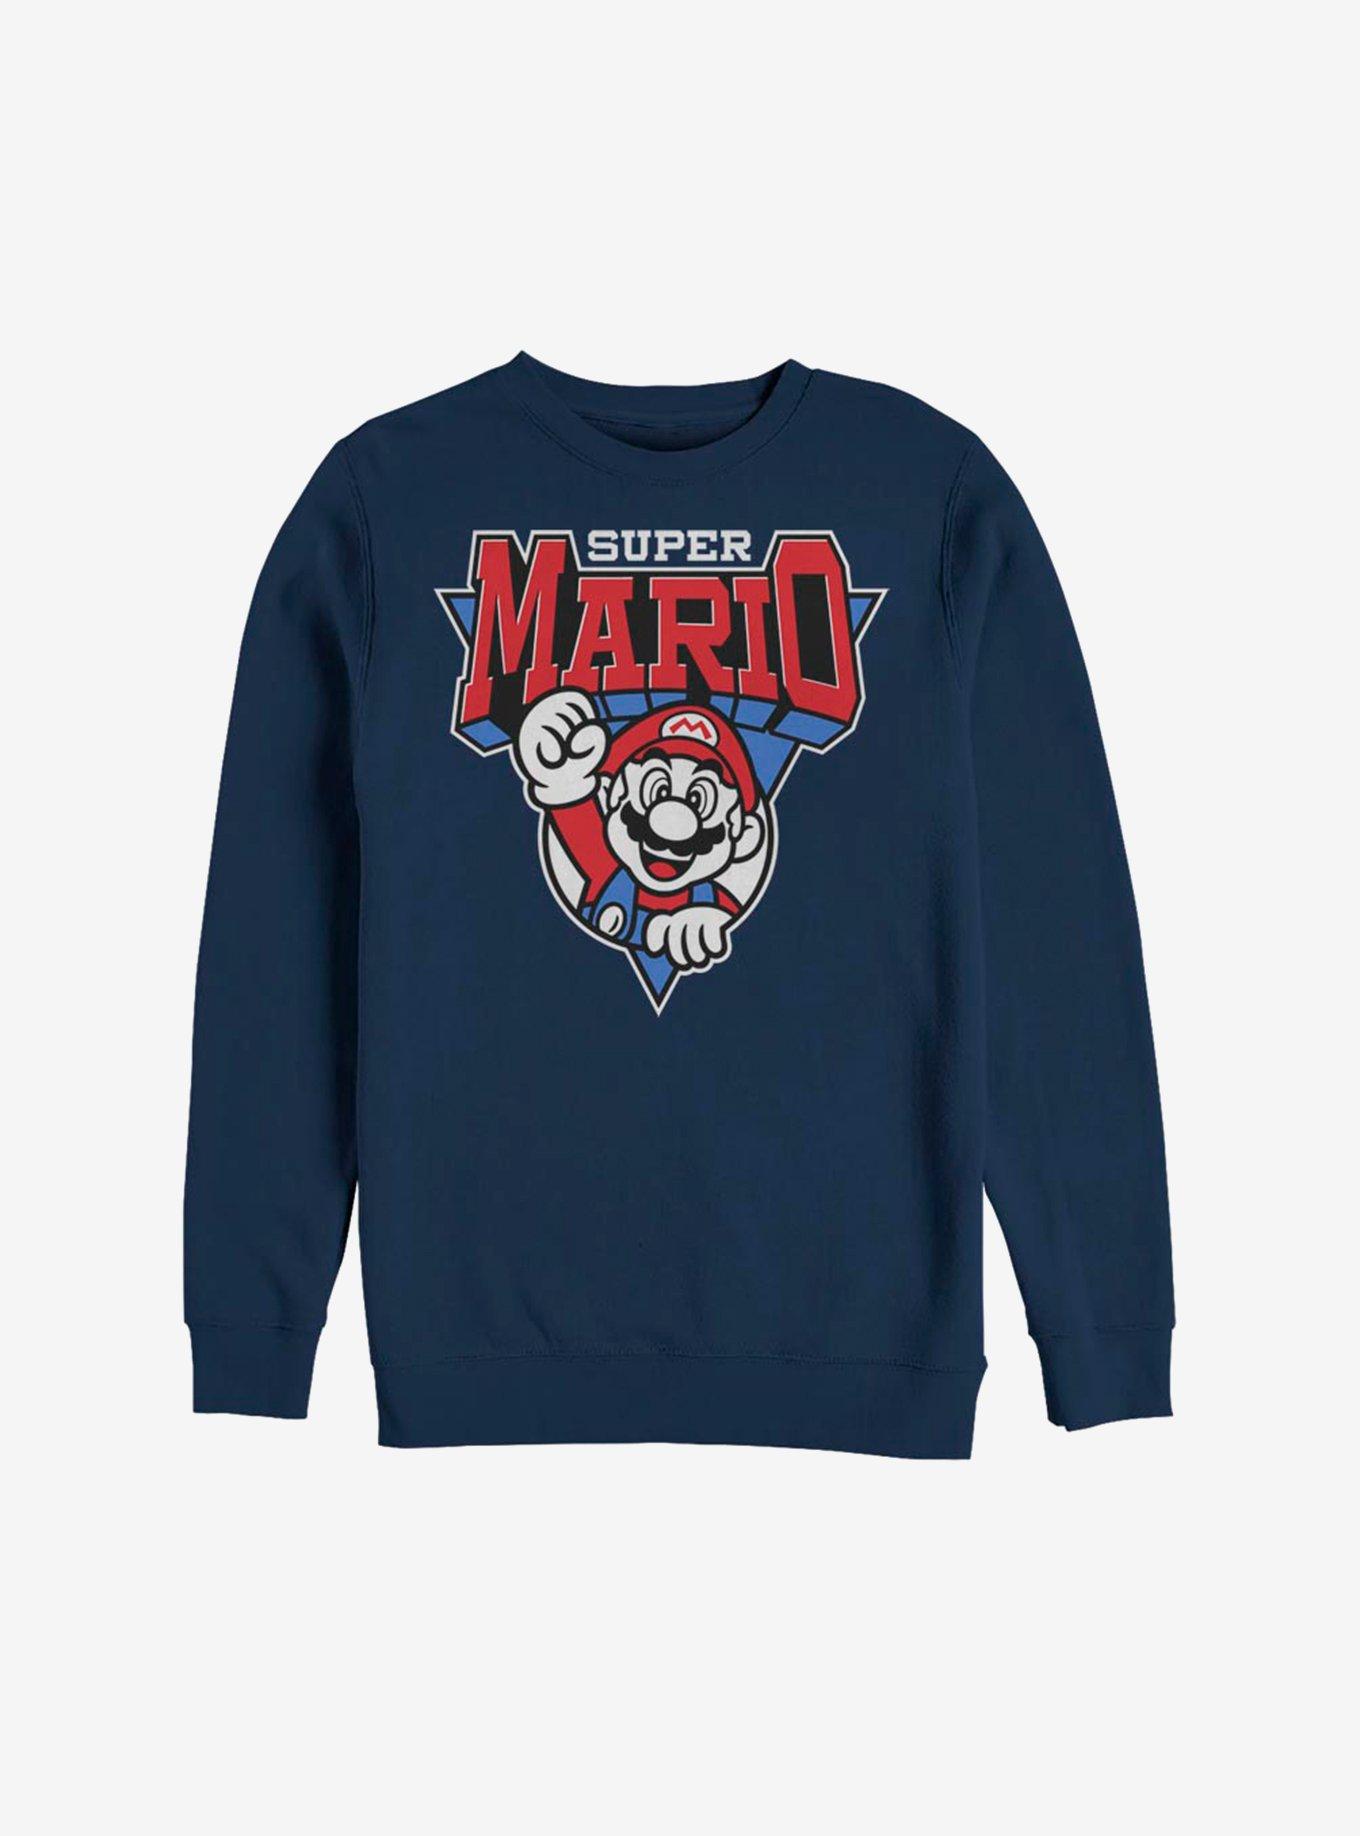 Nintendo Super Mario Team Mario Sweatshirt, NAVY, hi-res